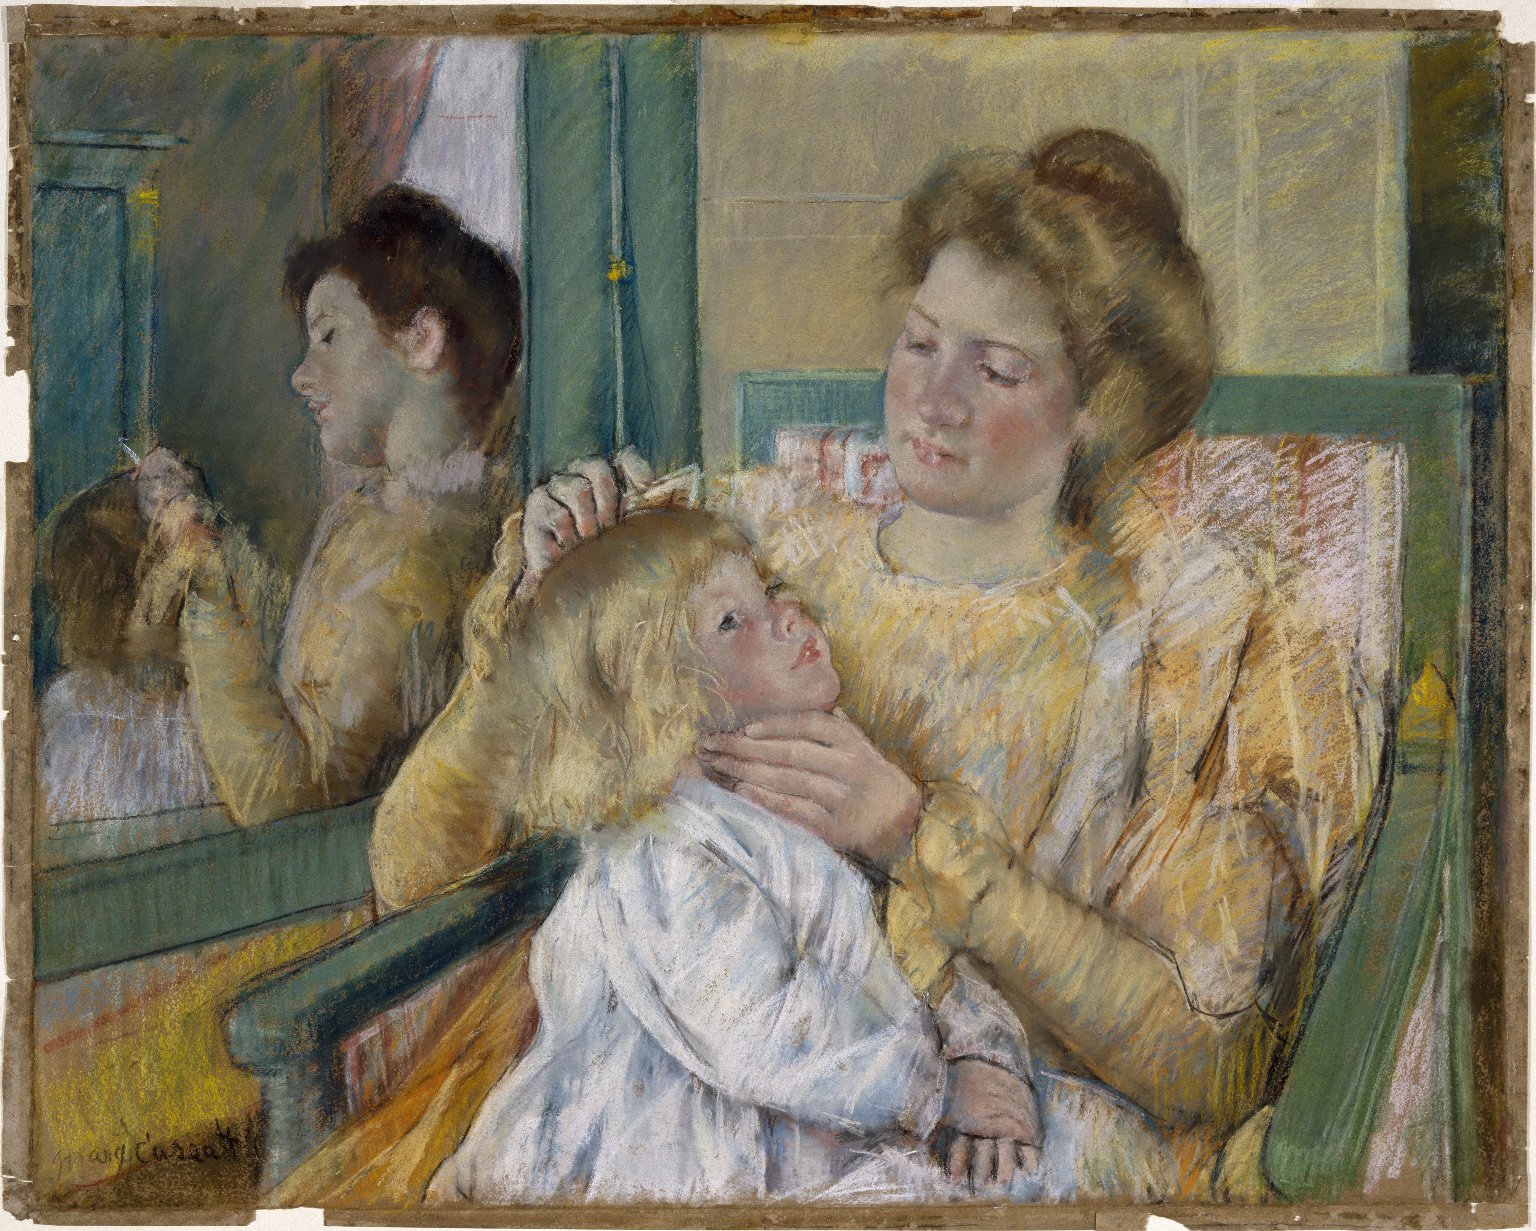 Matka česající vlasy svému dítěti by Mary Cassatt - 1901 - 64.1 x 80.3 cm 